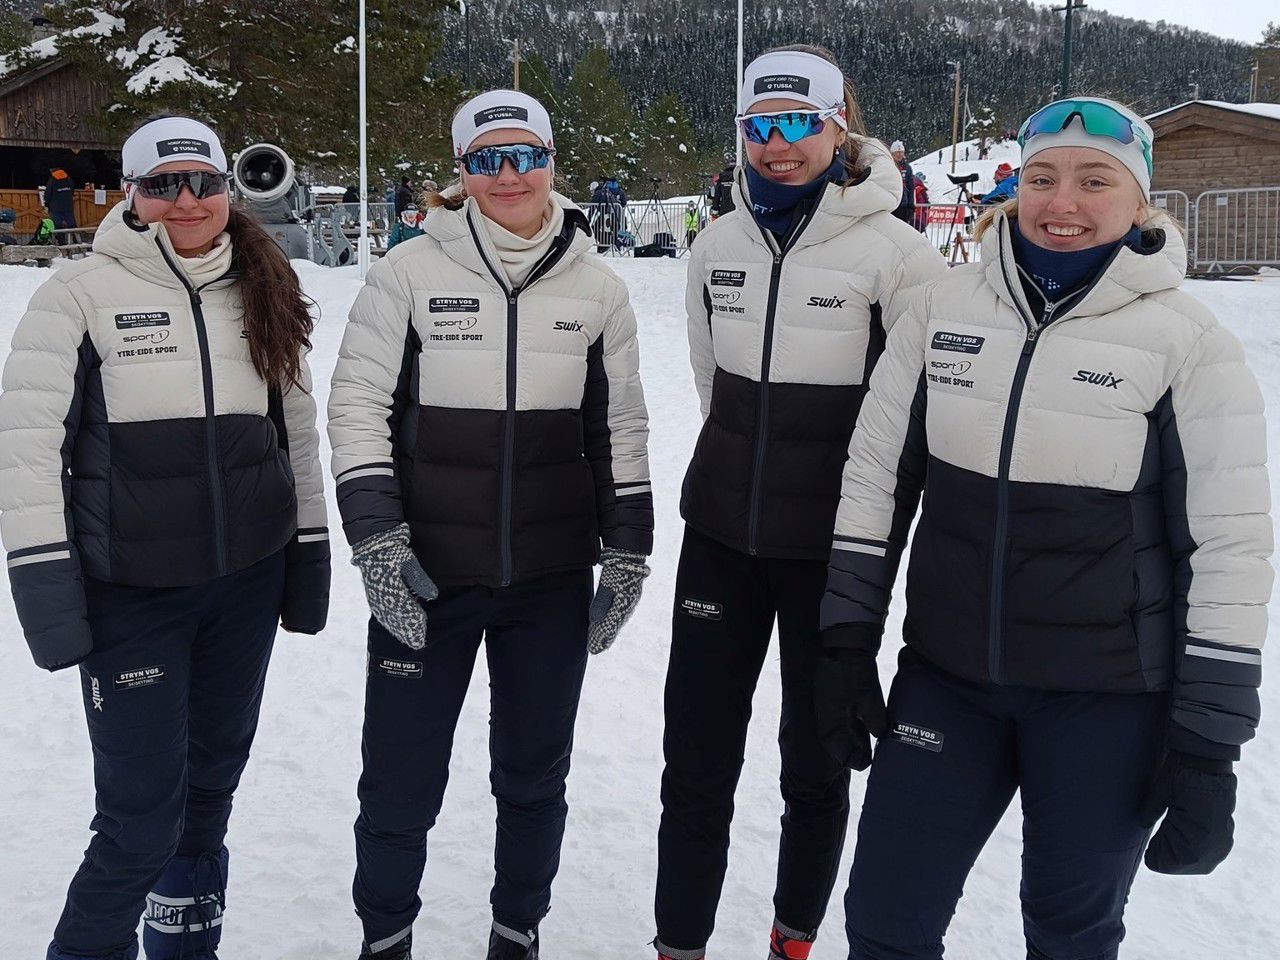 Fire vinterkledde elevar frå landslinje skiskyting. Foto: Stryn vgs